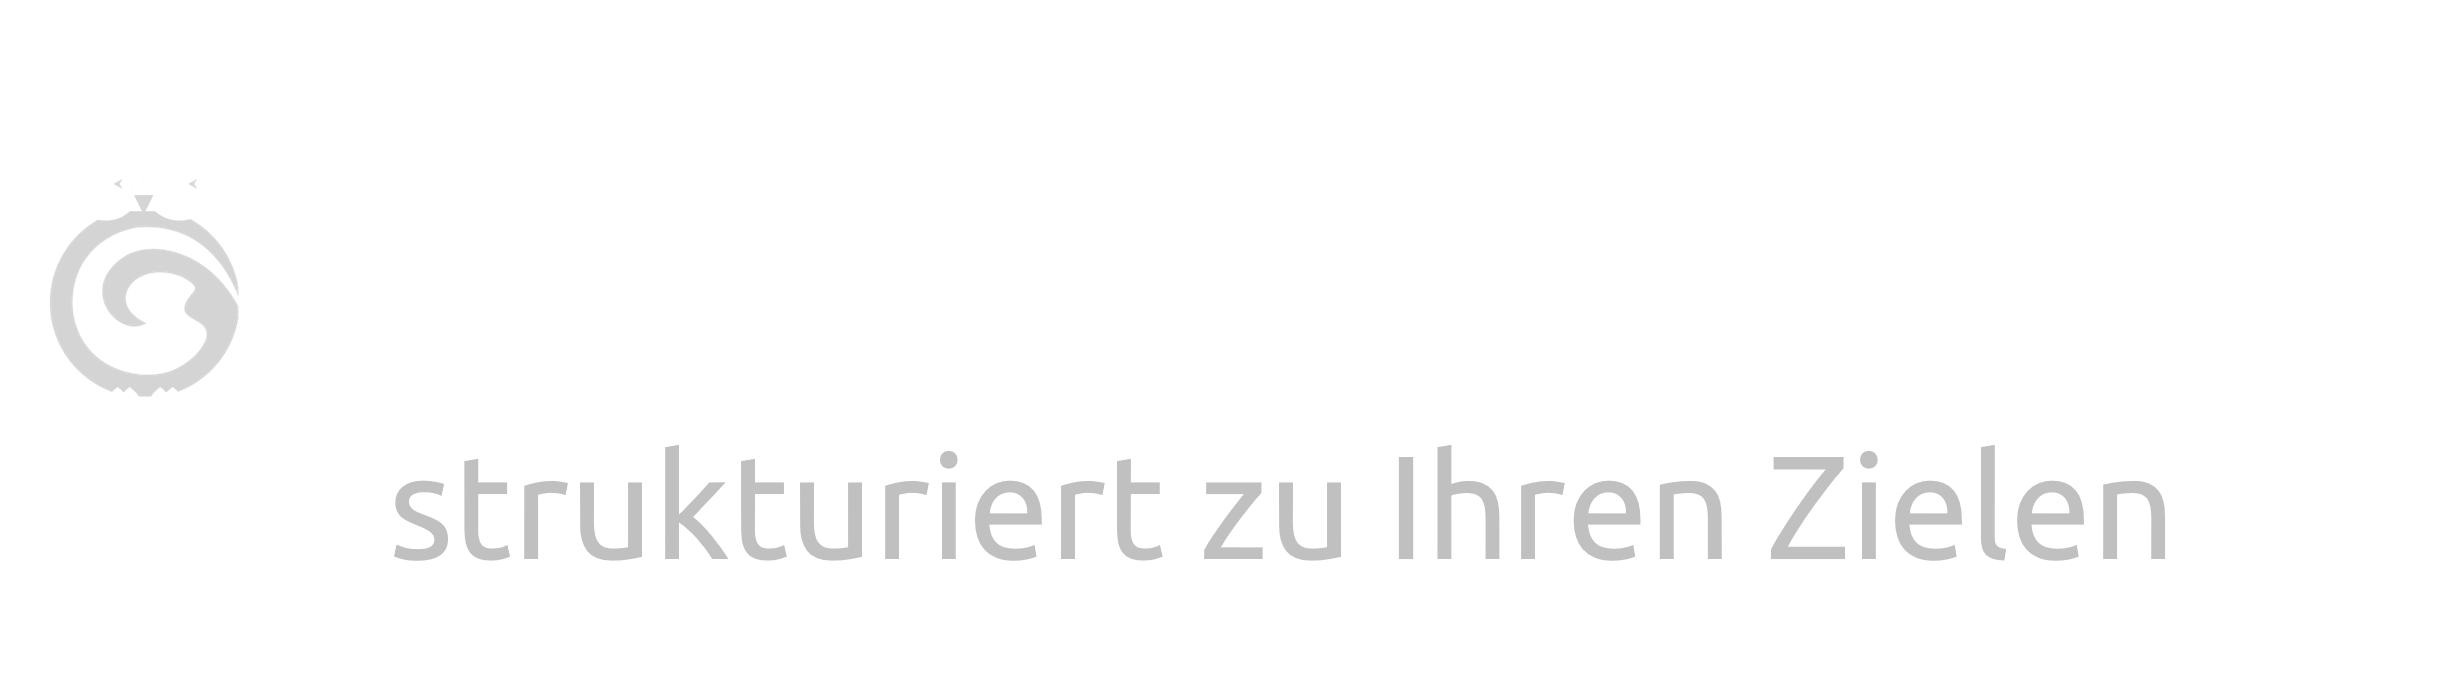 Hermannsdorfer Logo